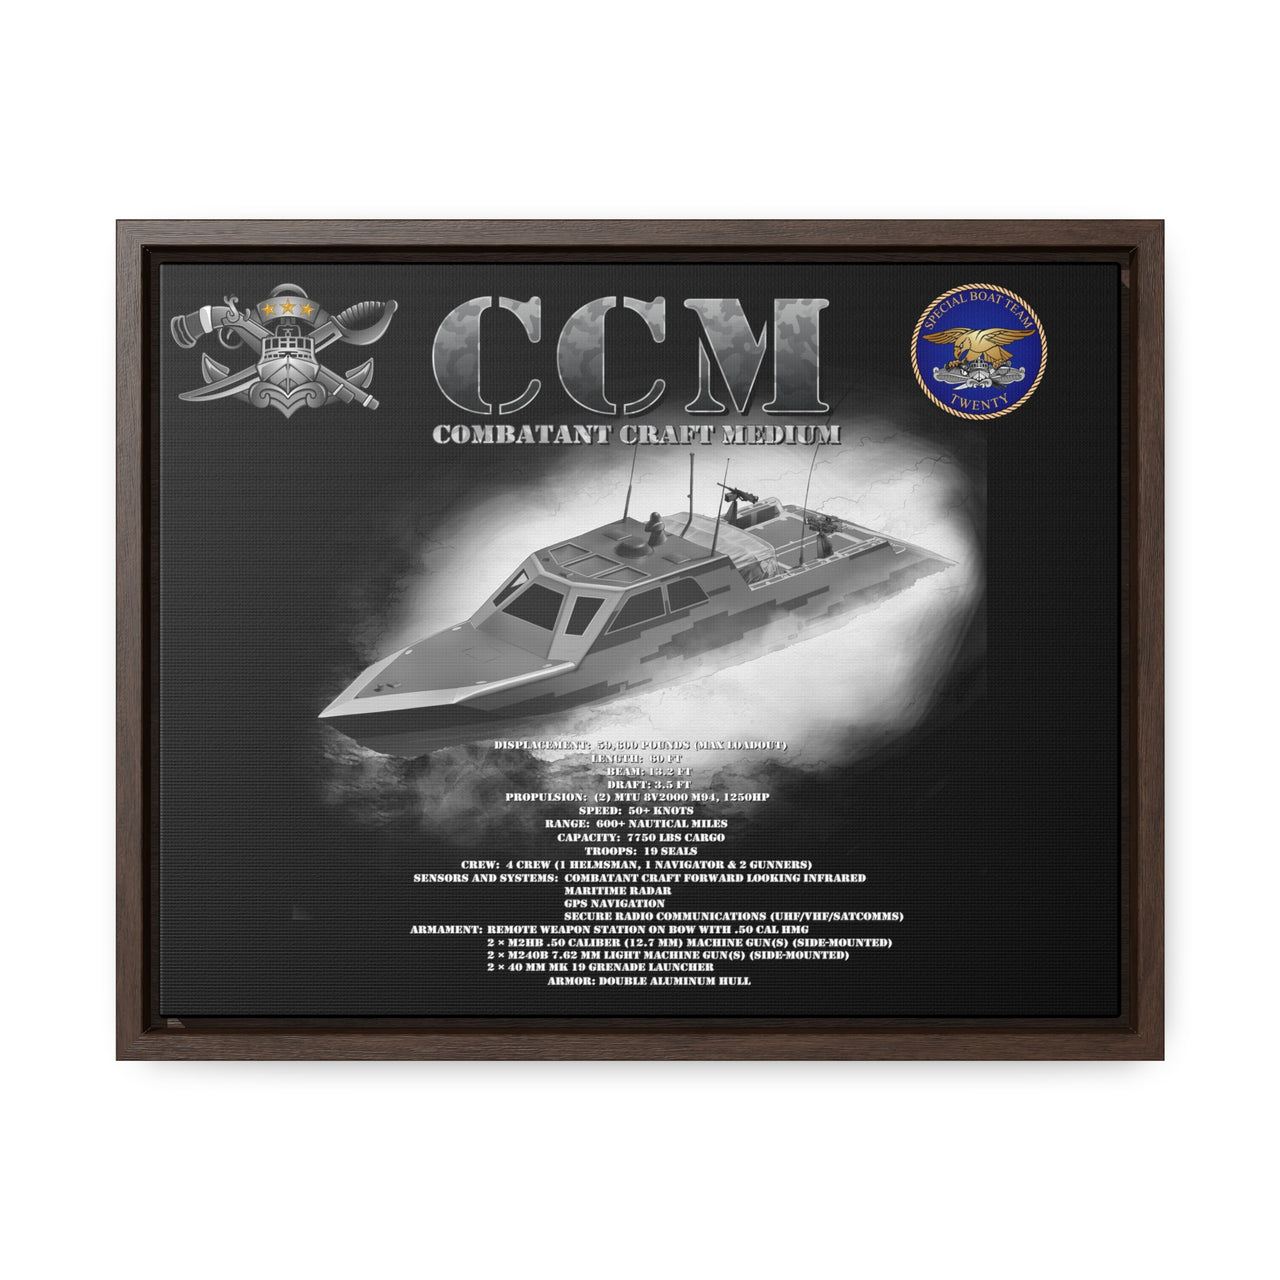 CCM - Combatant Craft Medium *Custom SBT 20